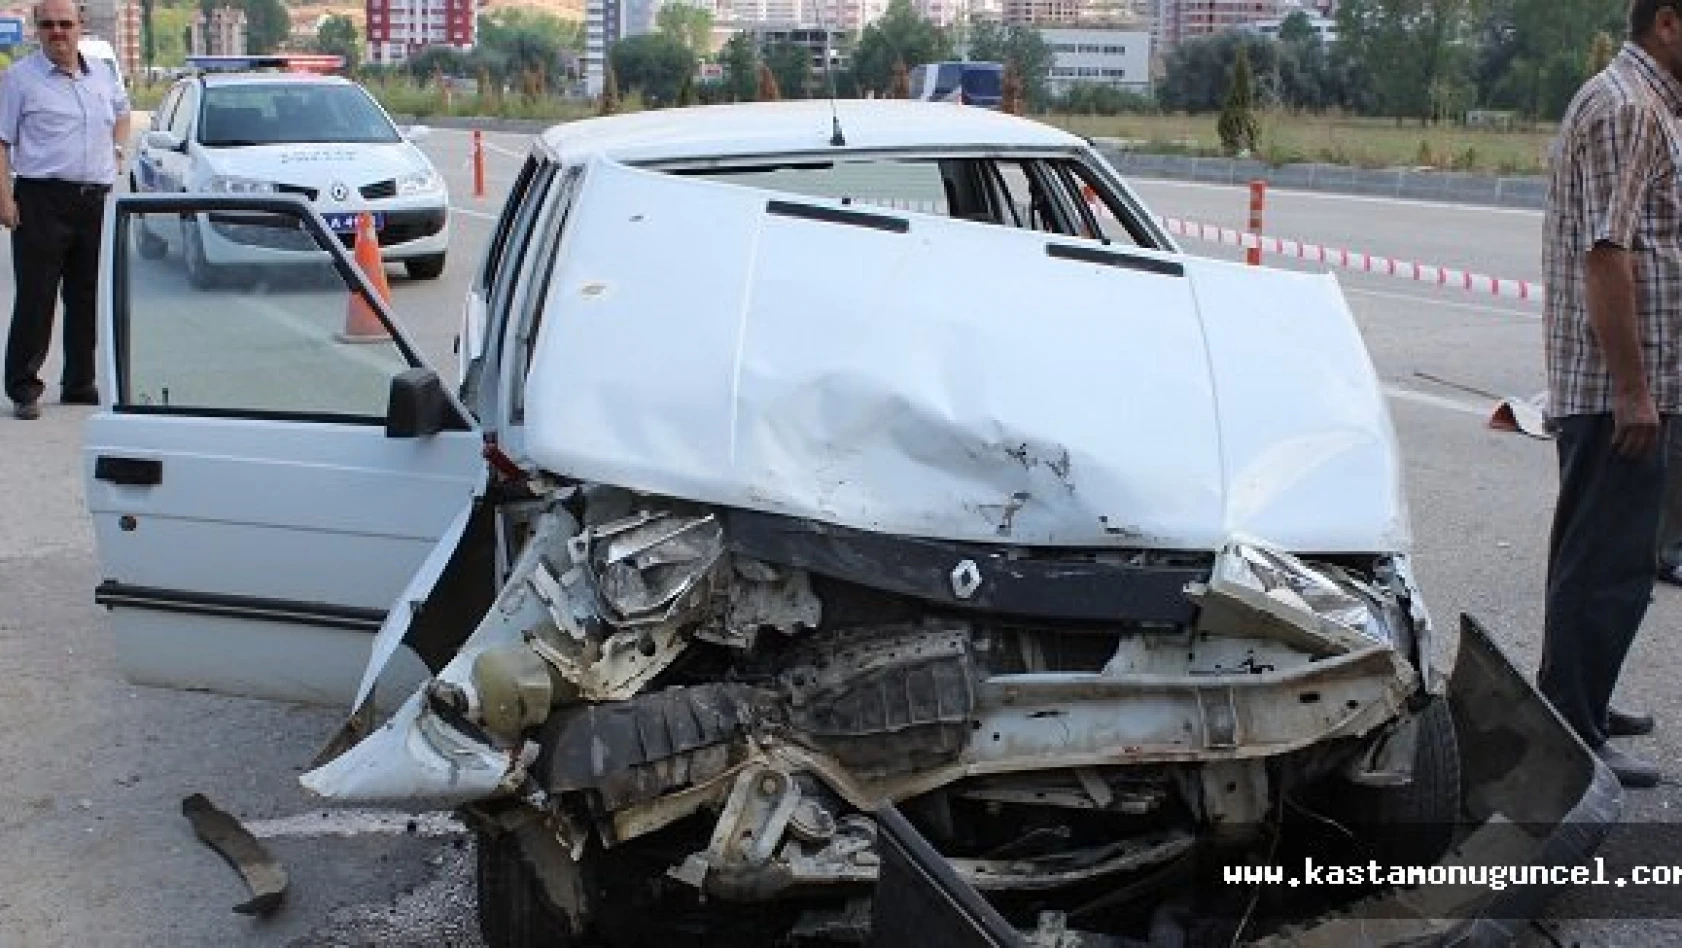 Kastamonu'da zincirleme kaza: 3 yaralı